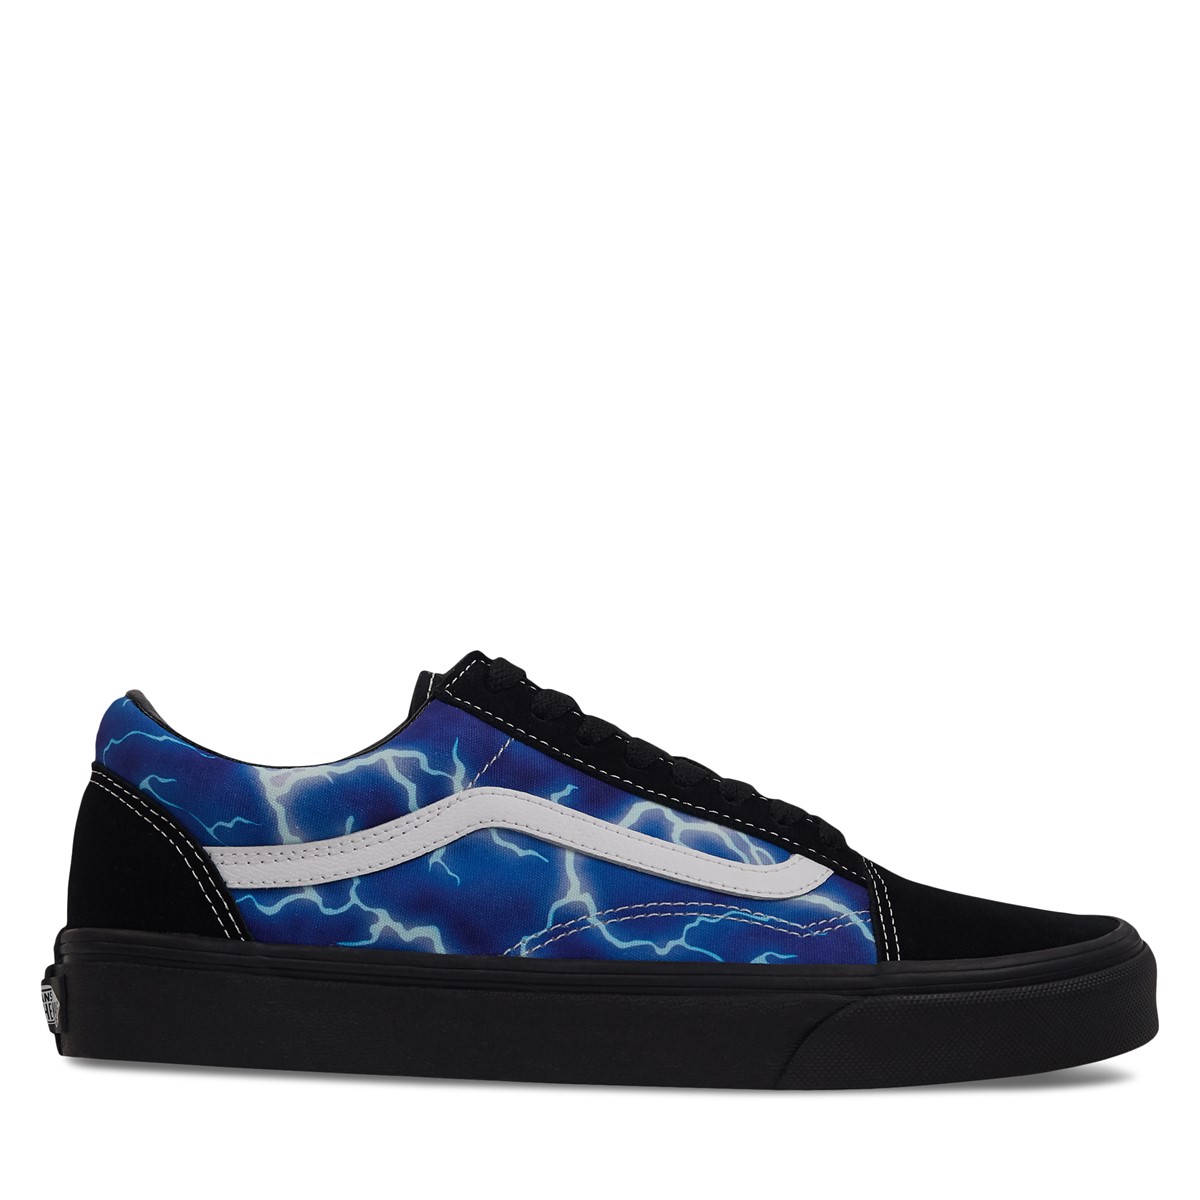 Lightning Old Skool Sneakers in Black/Blue